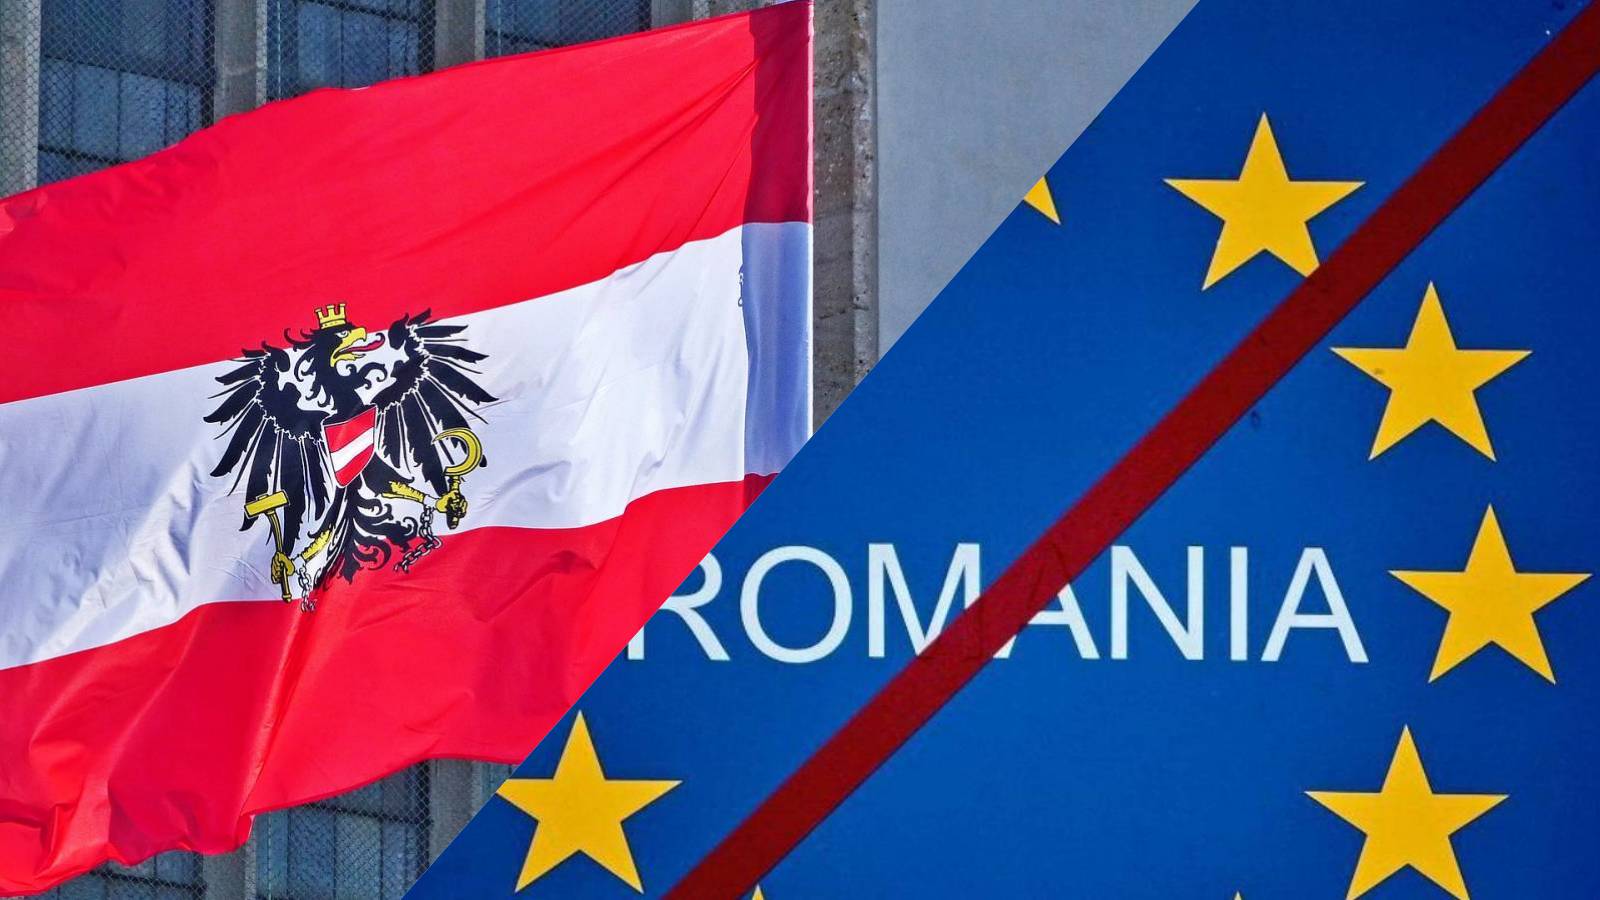 Austria solicita urgentemente nuevas medidas importantes que bloqueen la adhesión de Rumania a Schengen